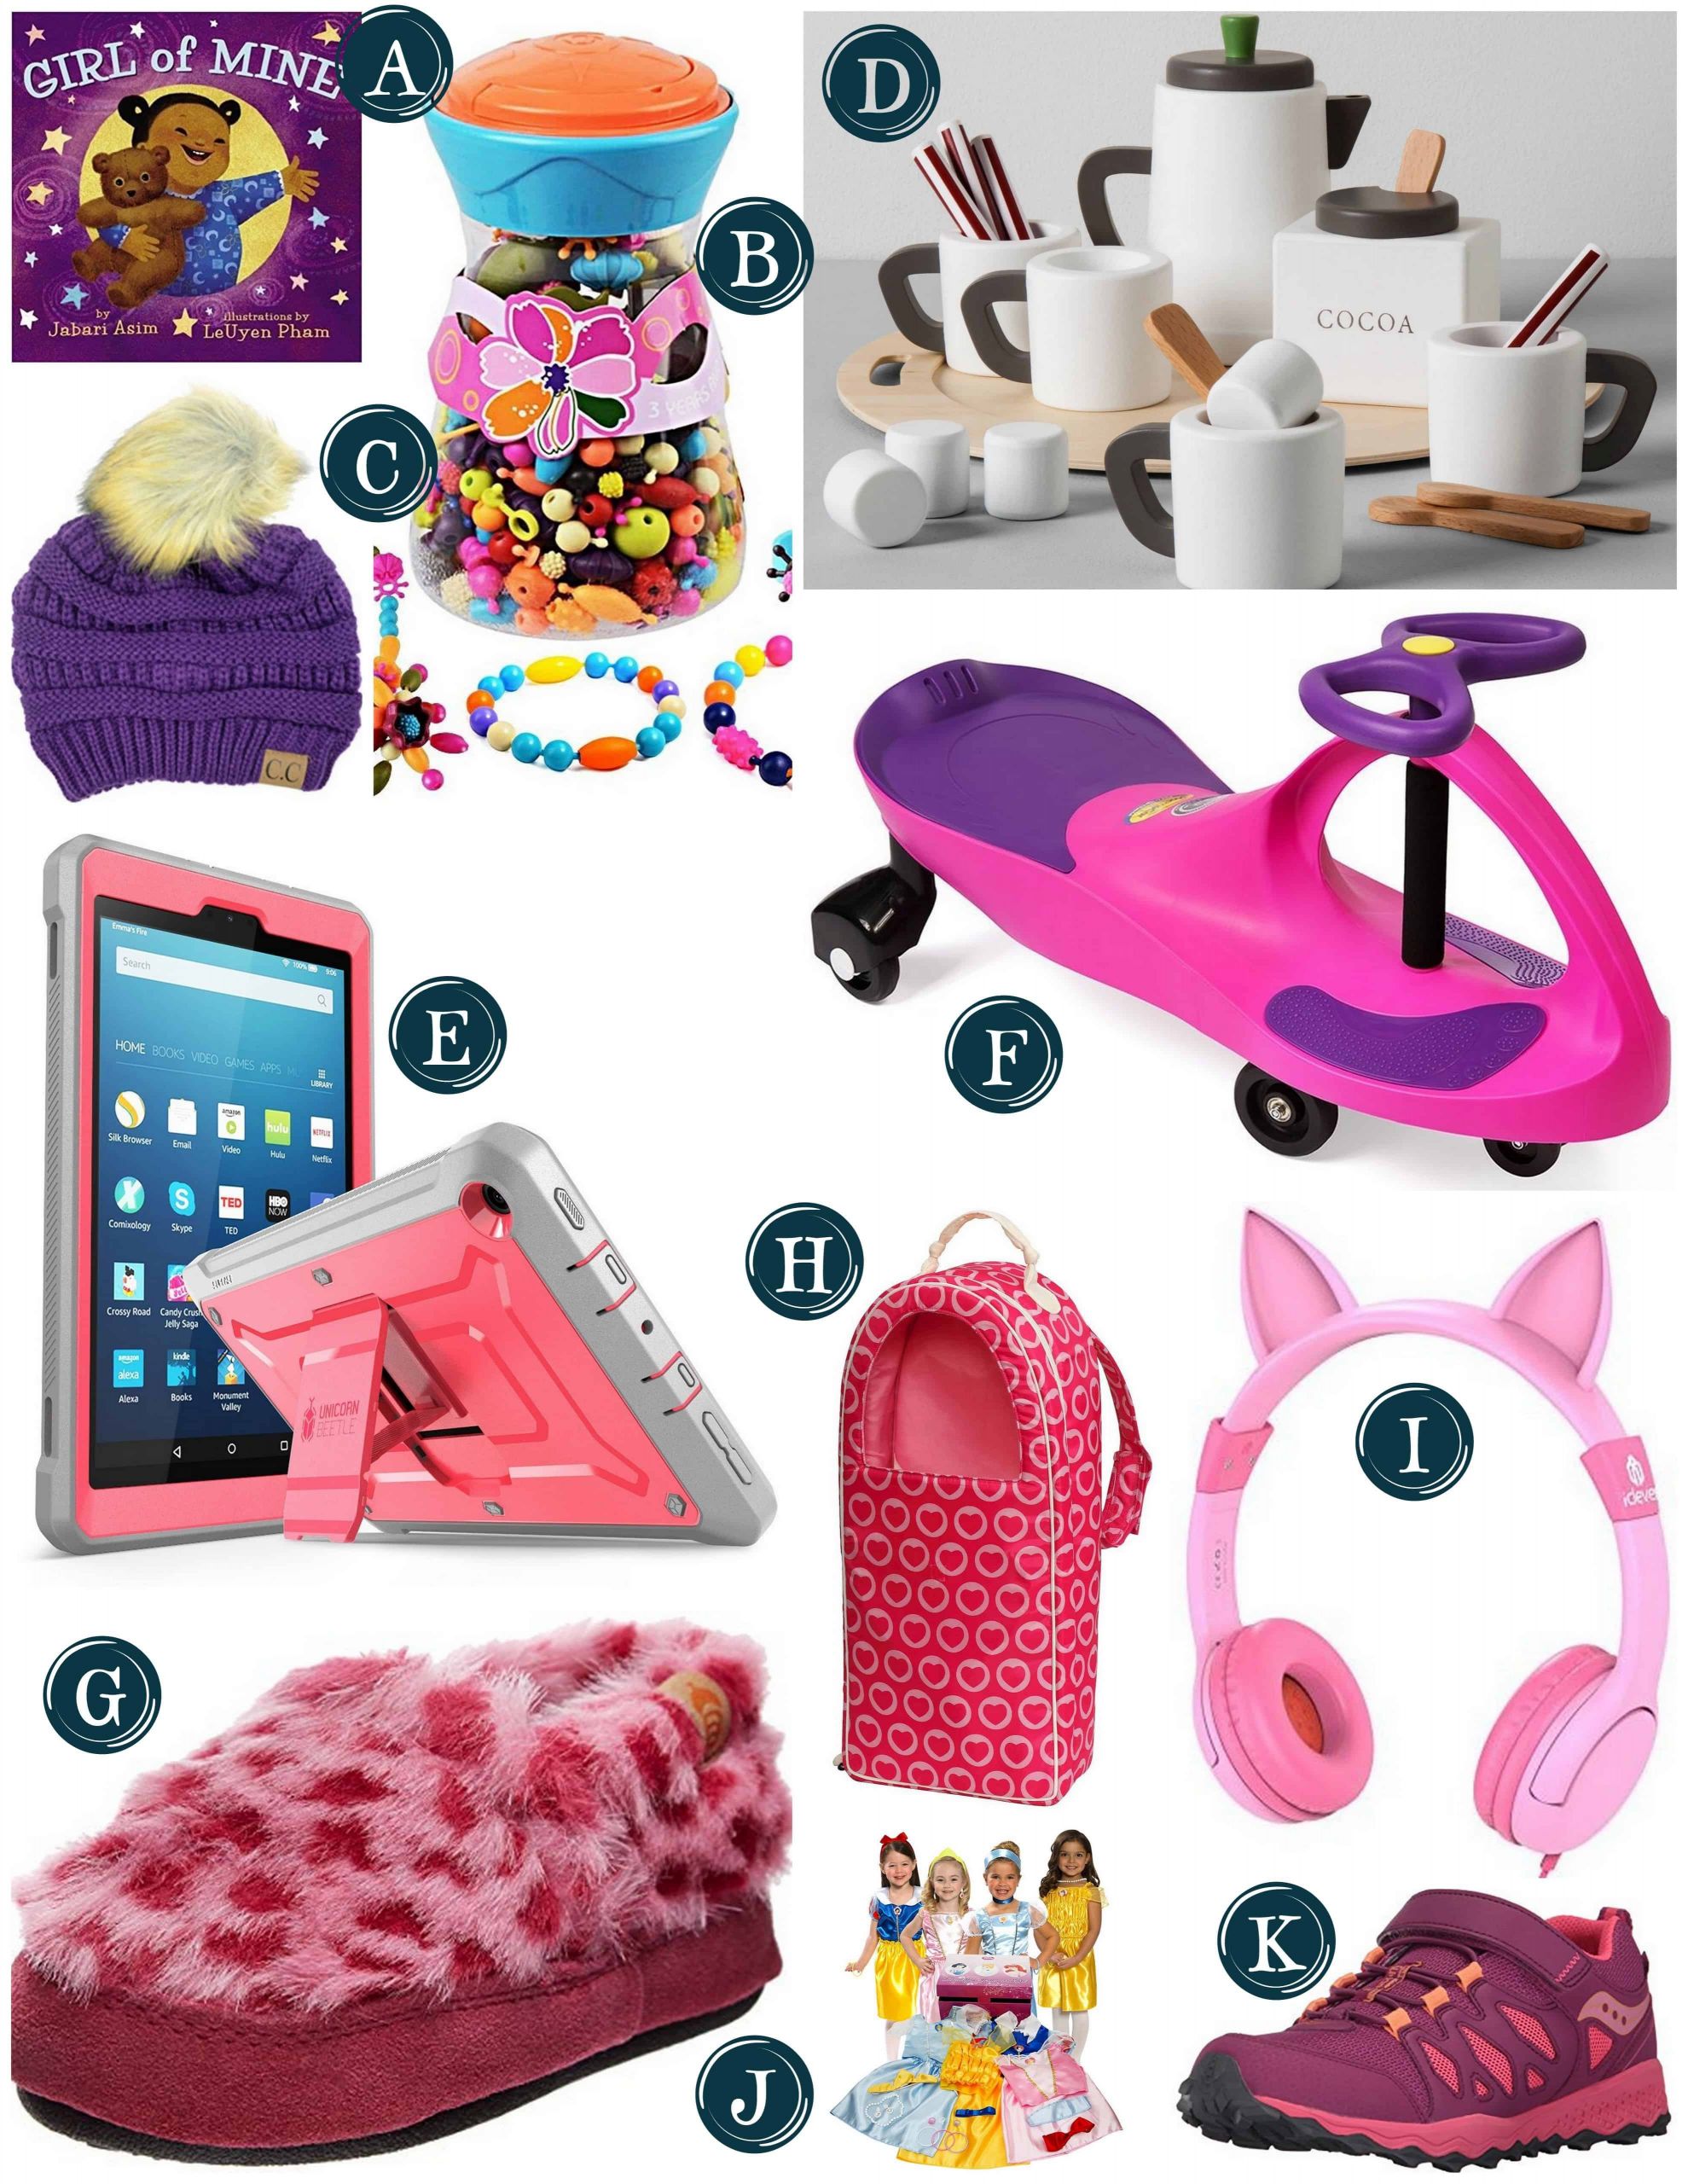 Gift Ideas For Little Girls
 Gift Guide for Little Girls Christmas Gift Ideas for Girls